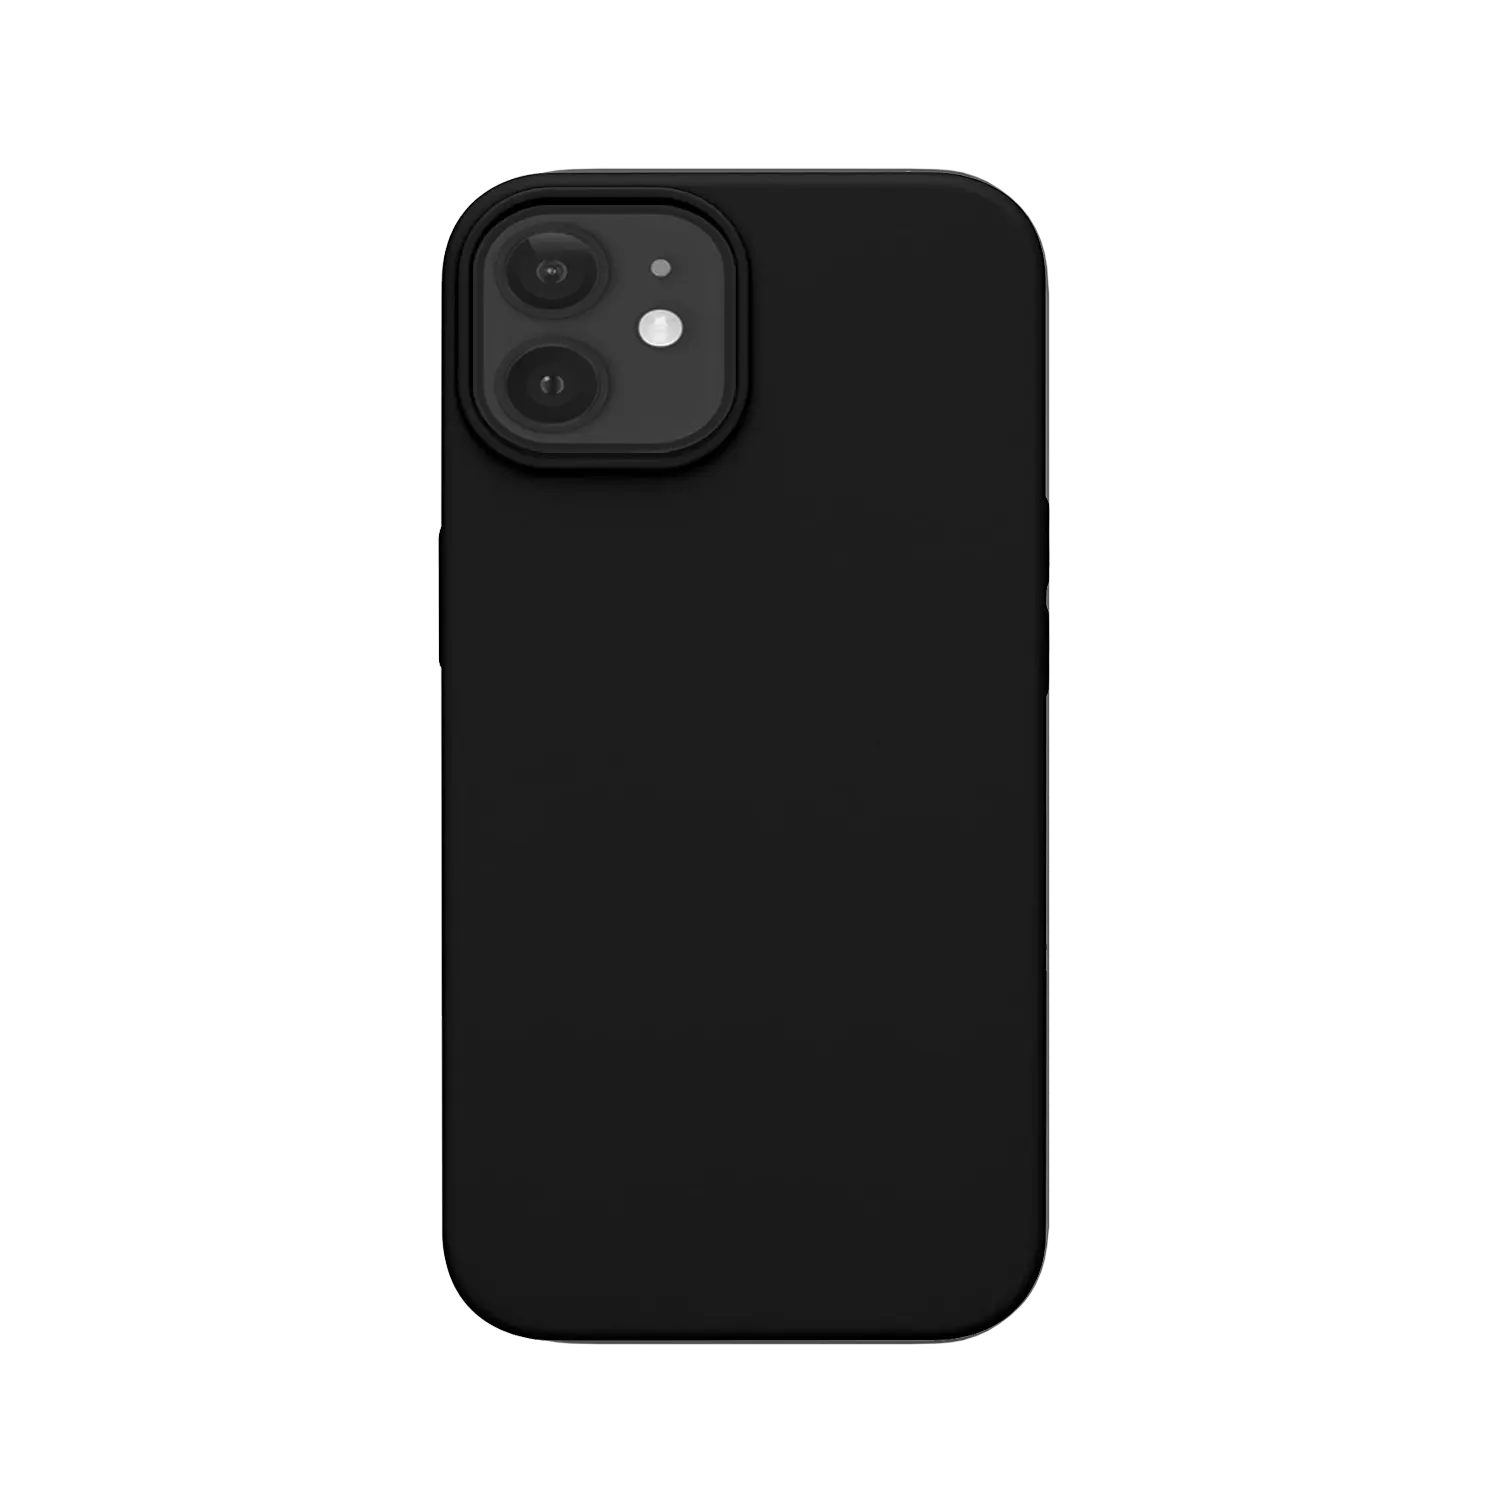 Black-silicone-iphone-12-case